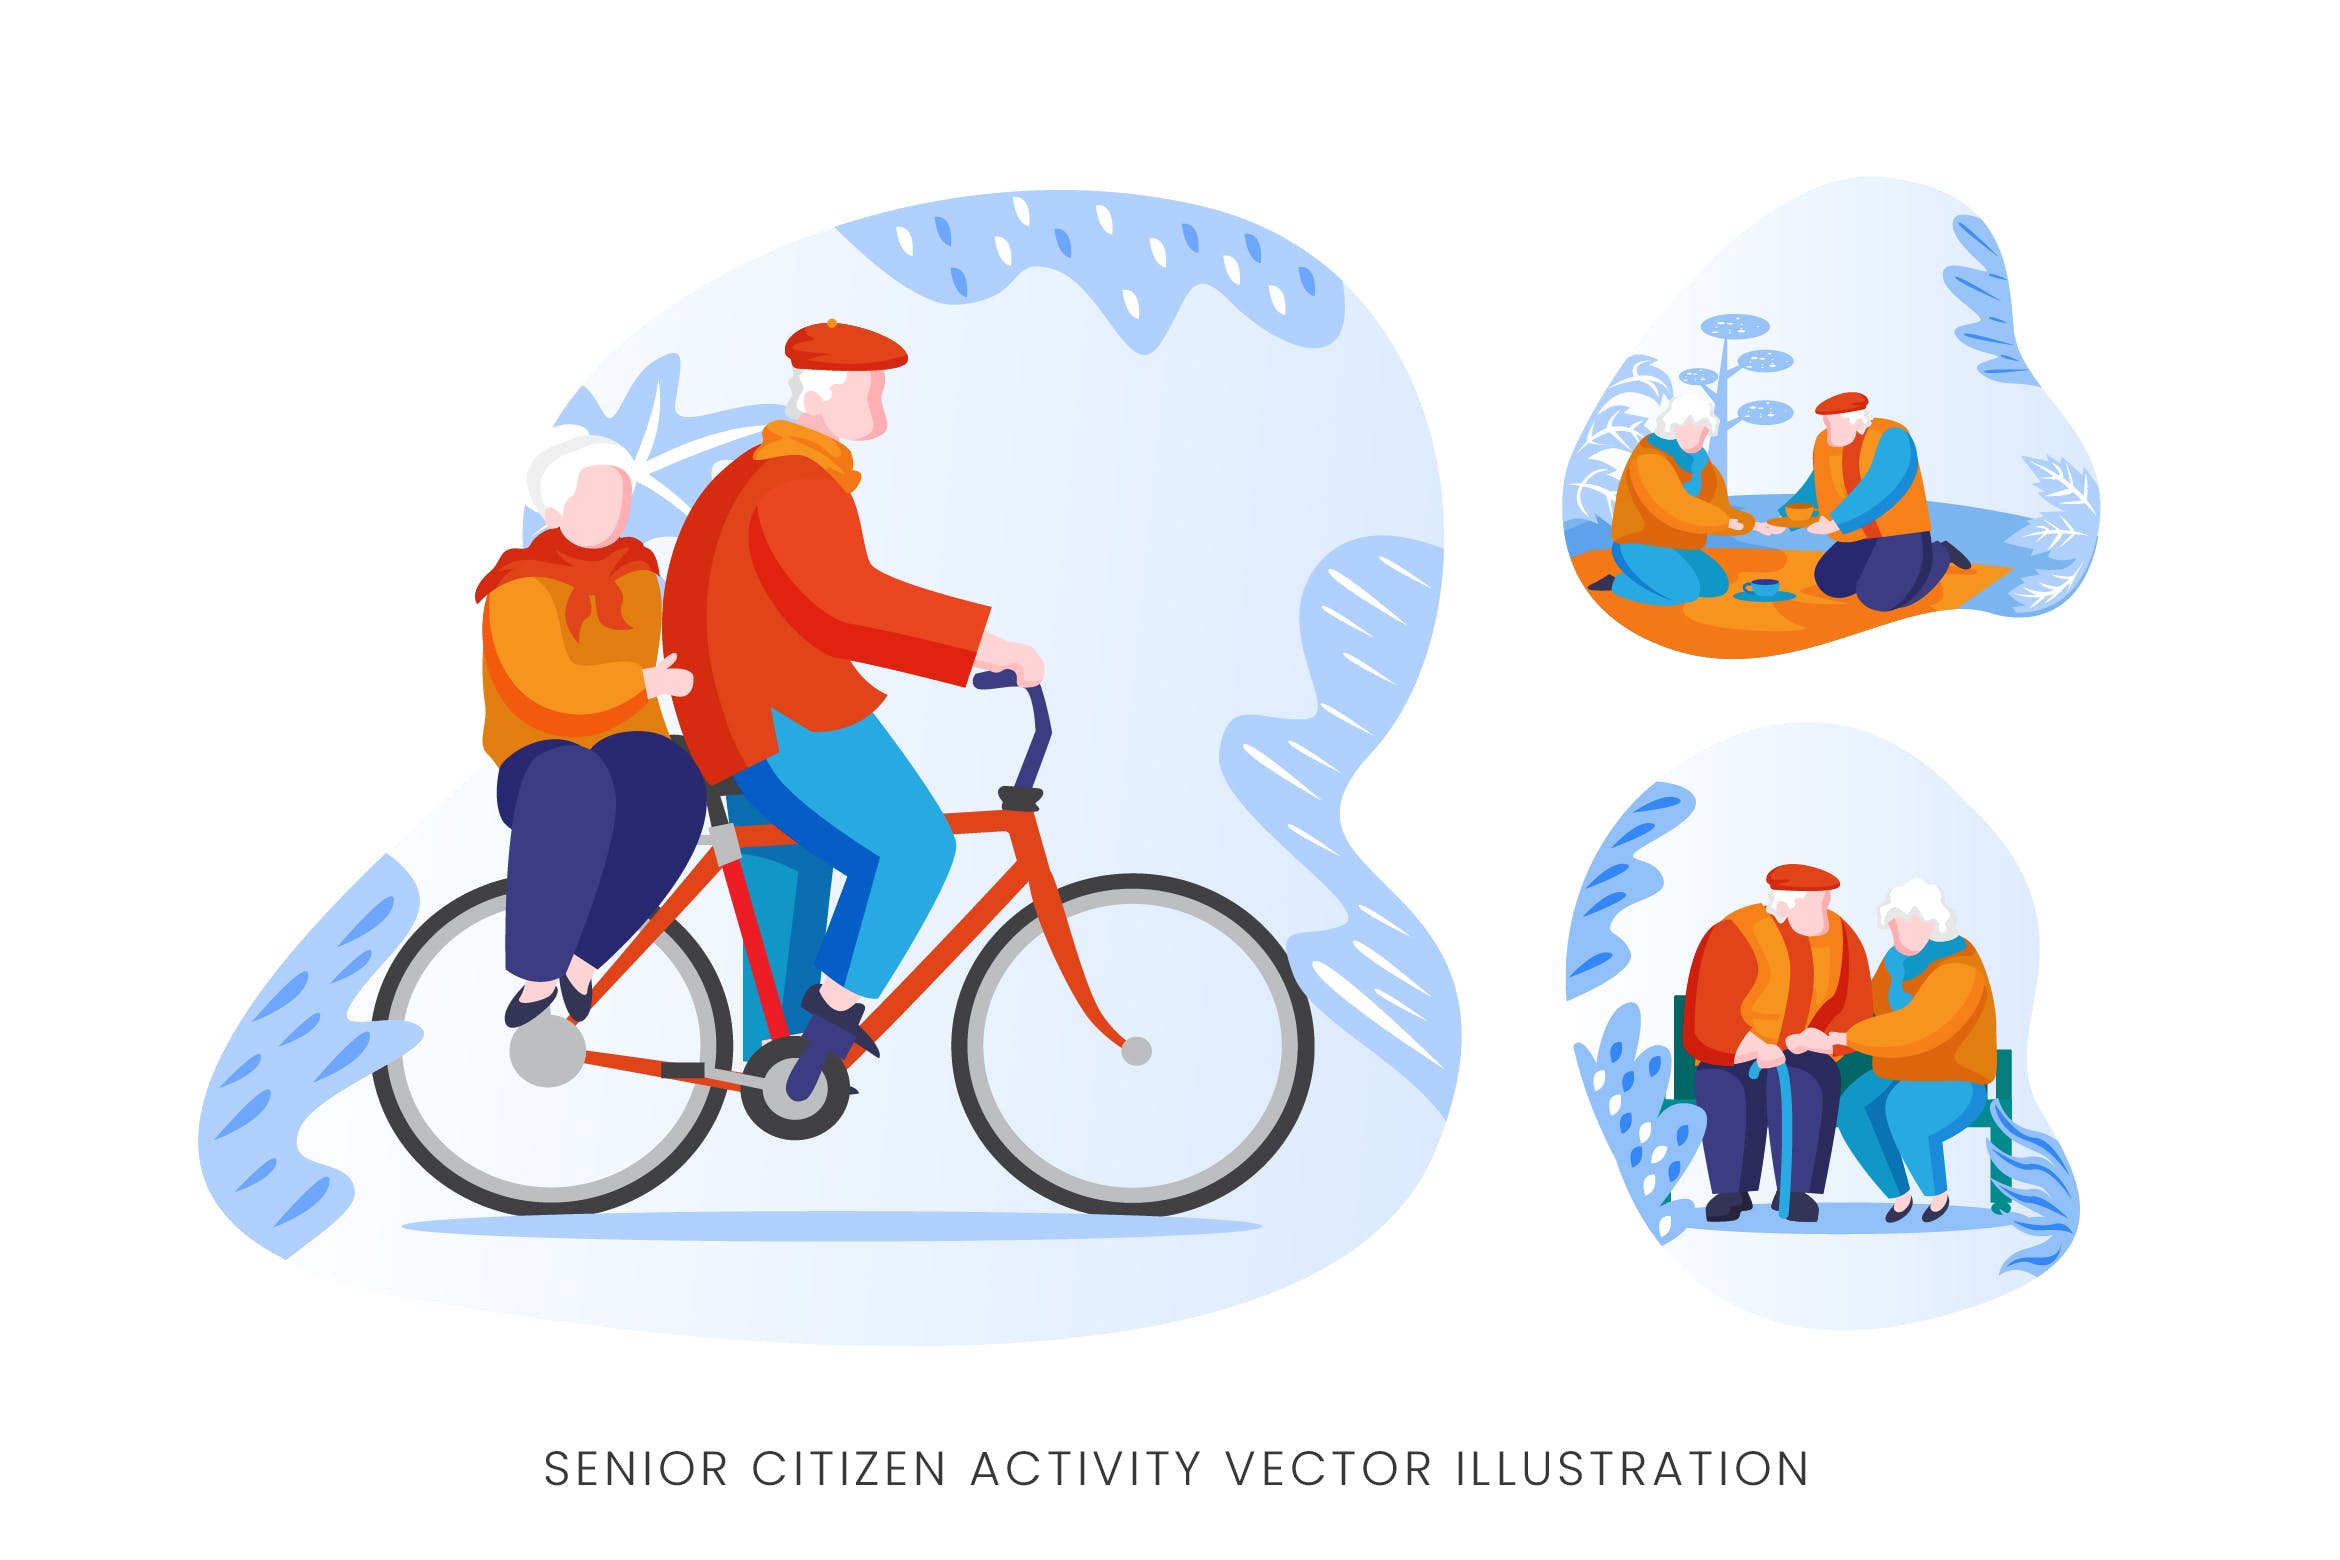 老年人生活人物形象矢量手绘素材库精选设计素材 Senior Citizen Vector Character Set插图